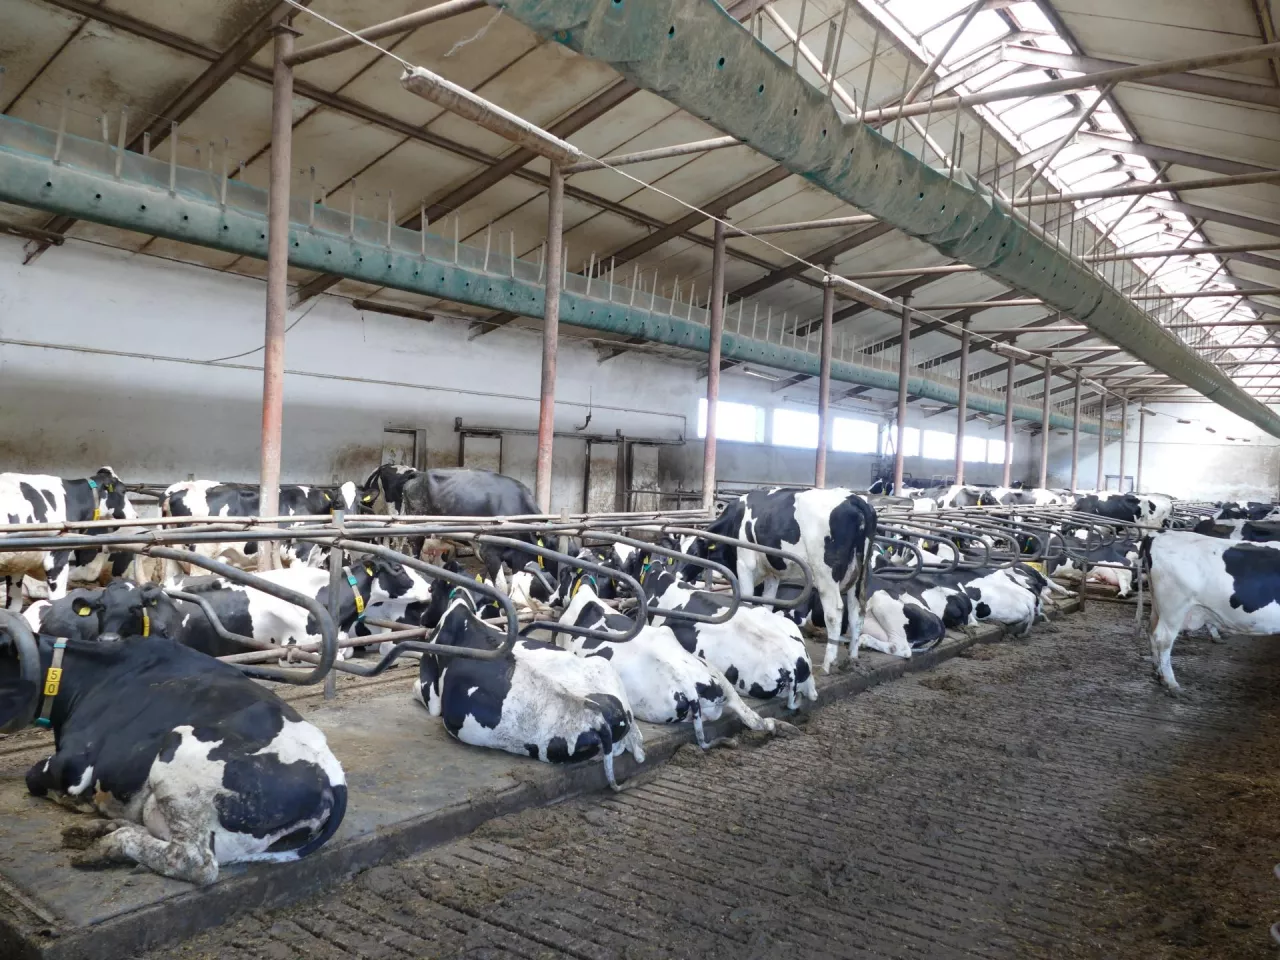 &lt;p&gt;Szacuje się, że z powodu stresu cieplnego, każdego upalnego dnia krowy tracą w Polsce 3 litry mleka&lt;/p&gt;